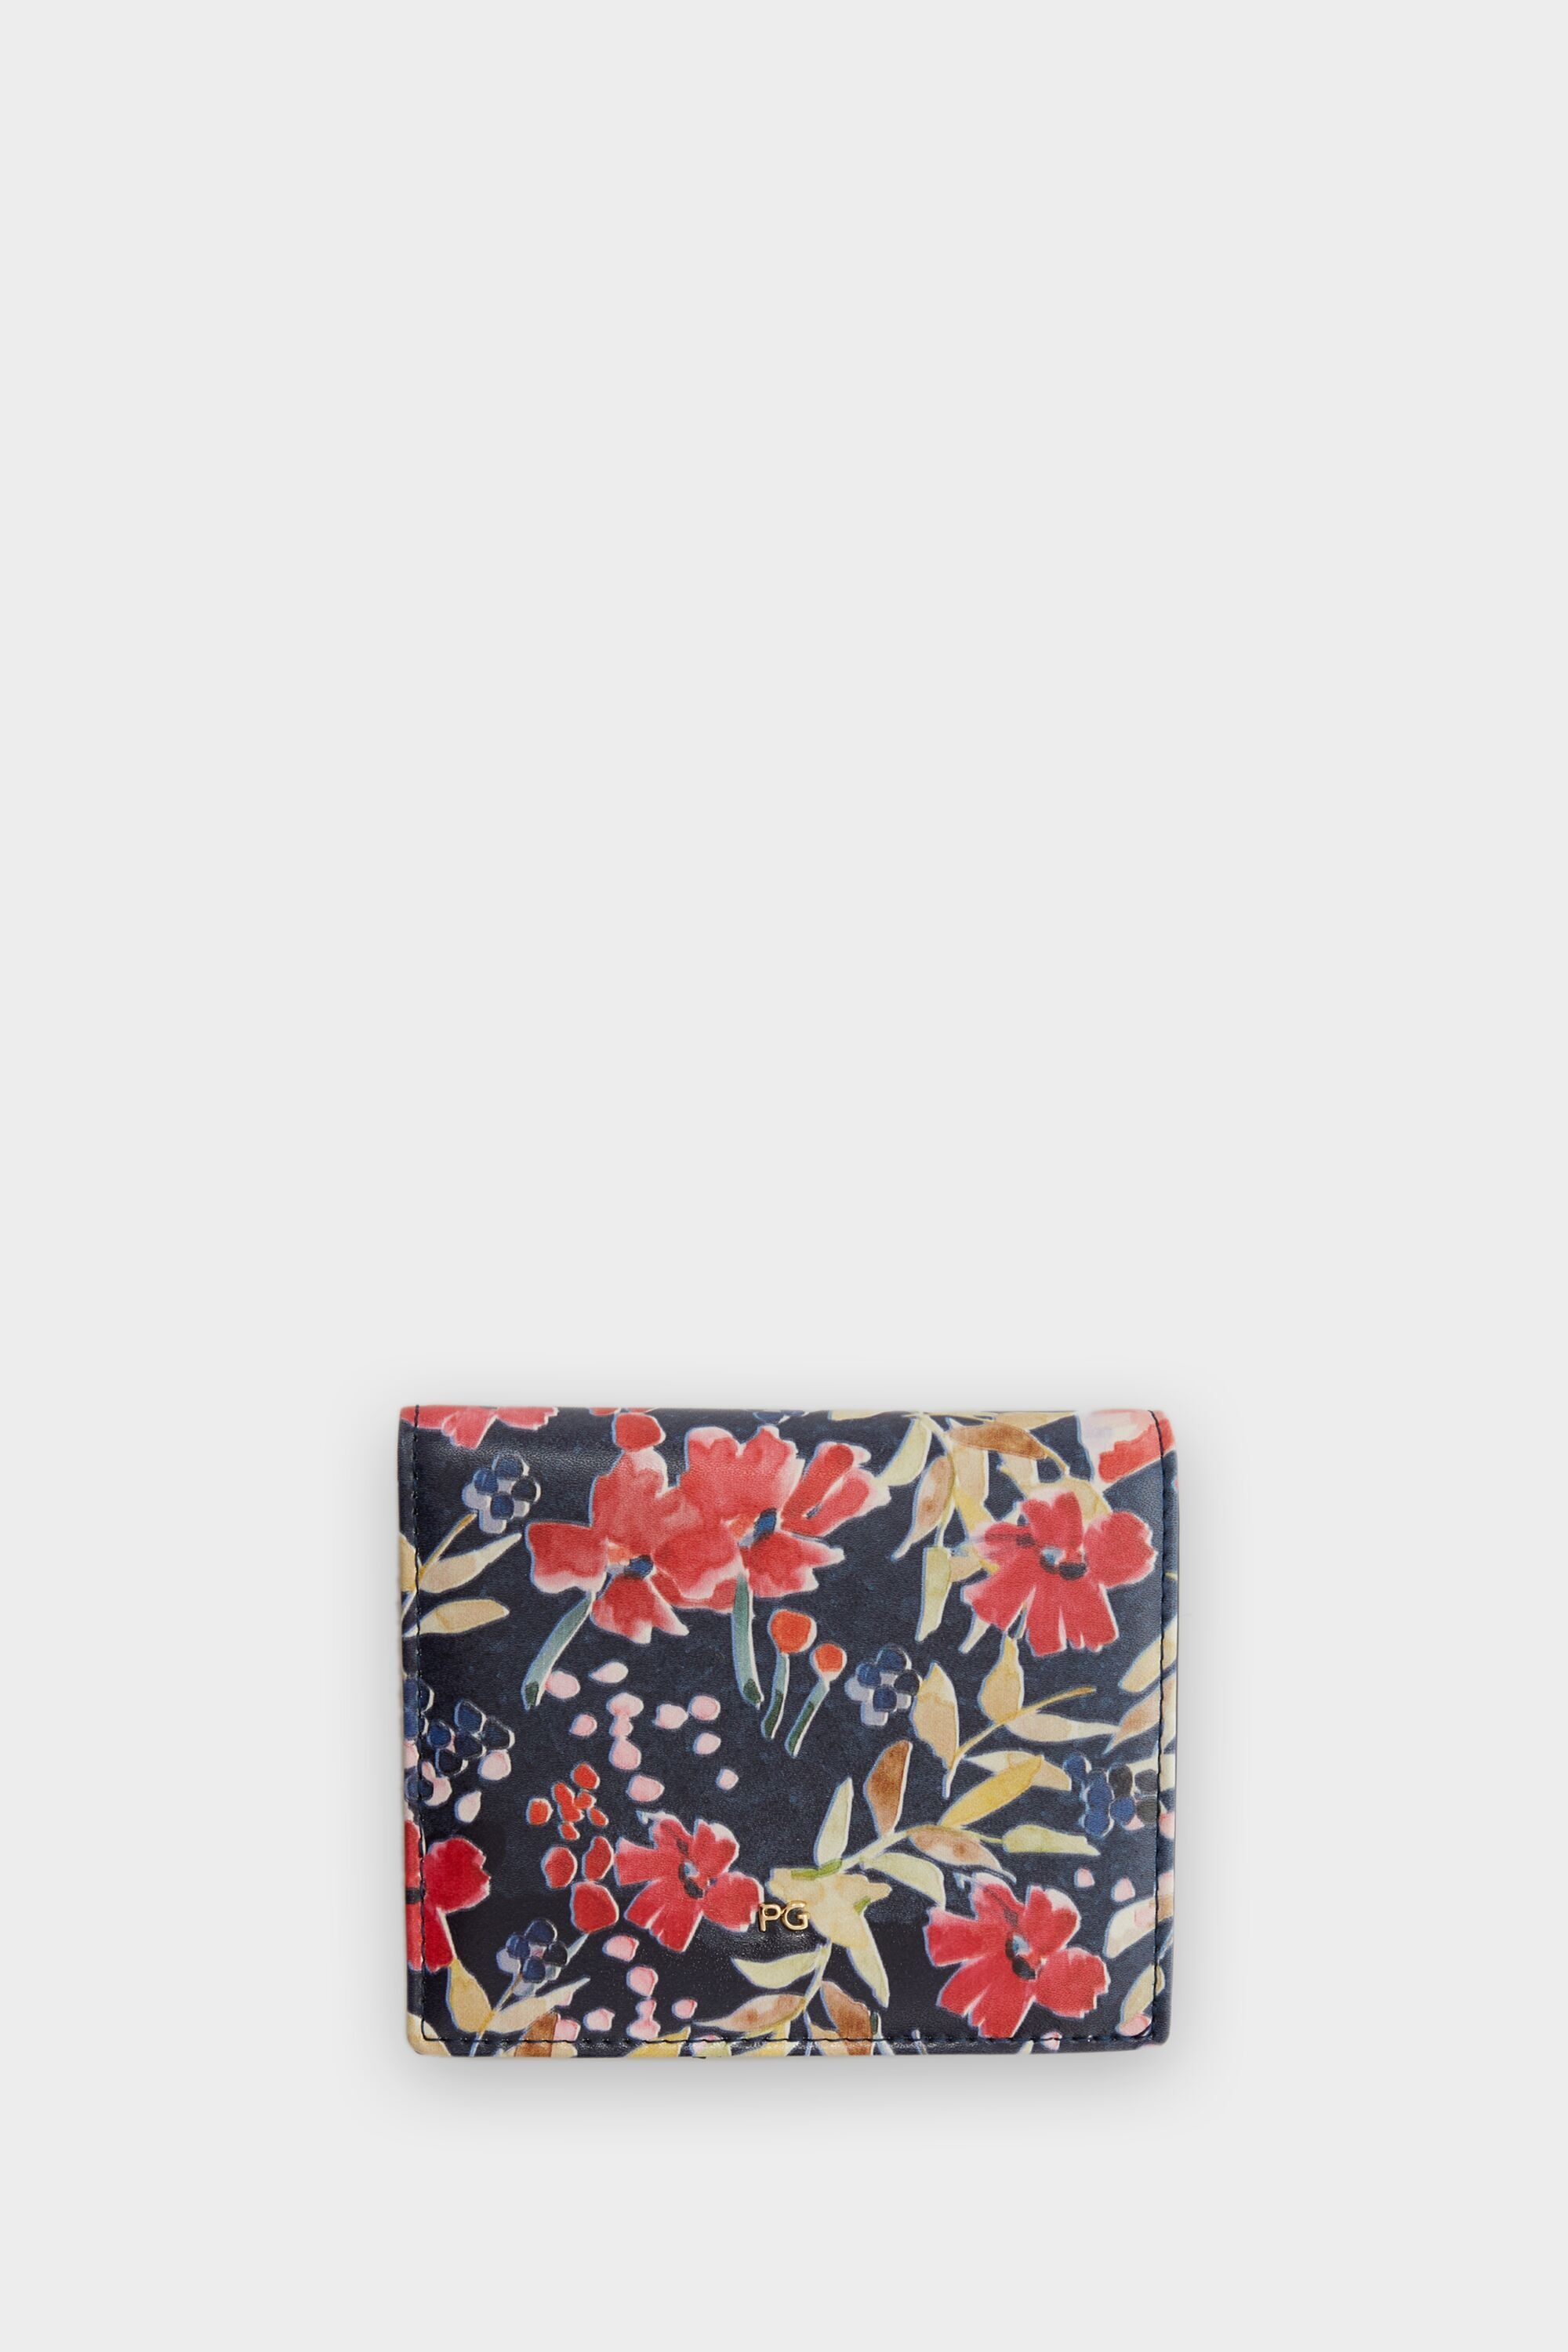 Cartera japonesa fold over floral